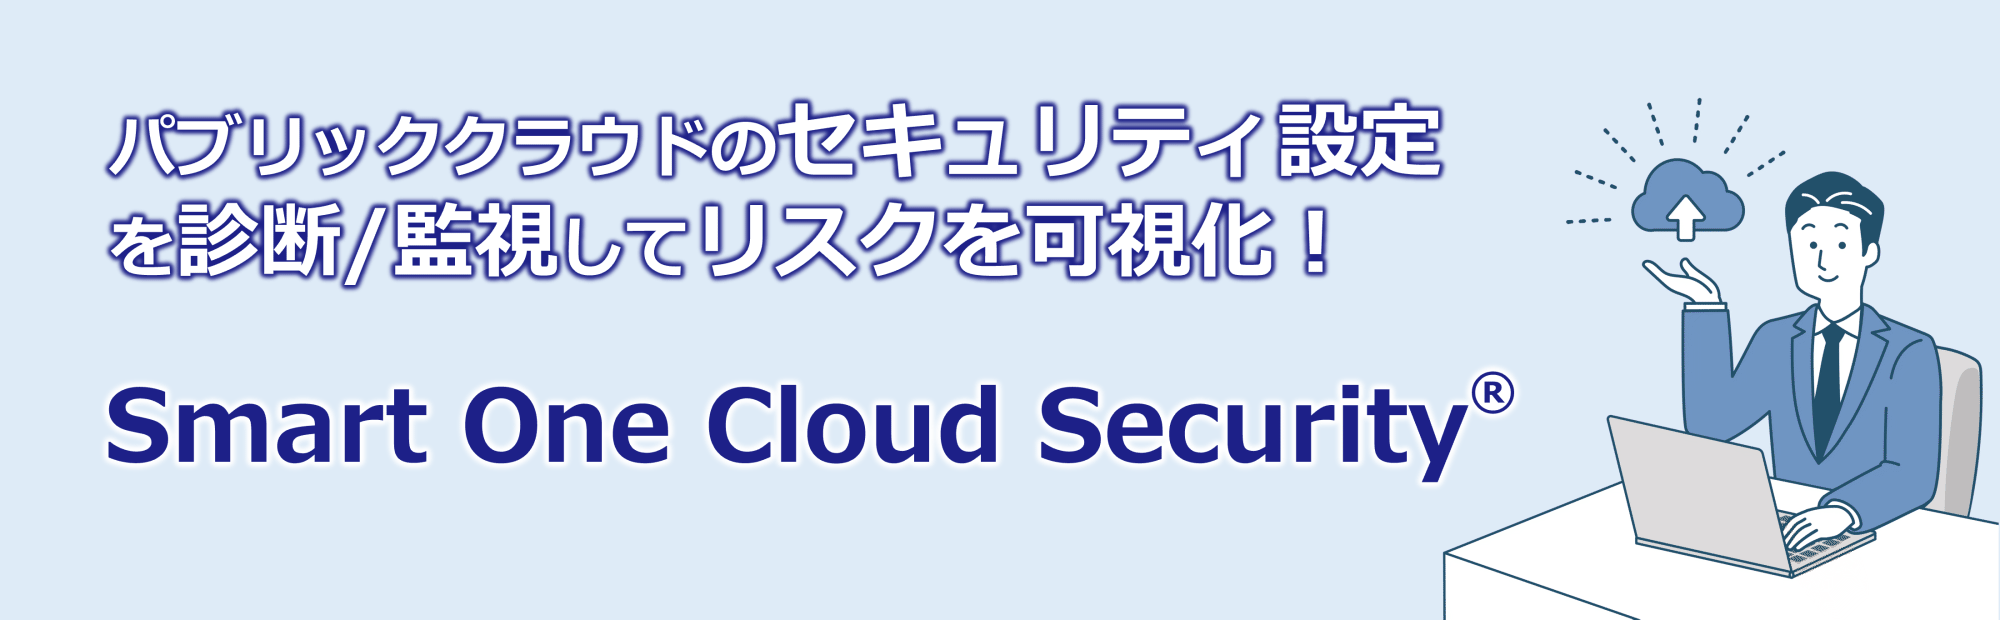 Smart One Cloud Security イメージ図